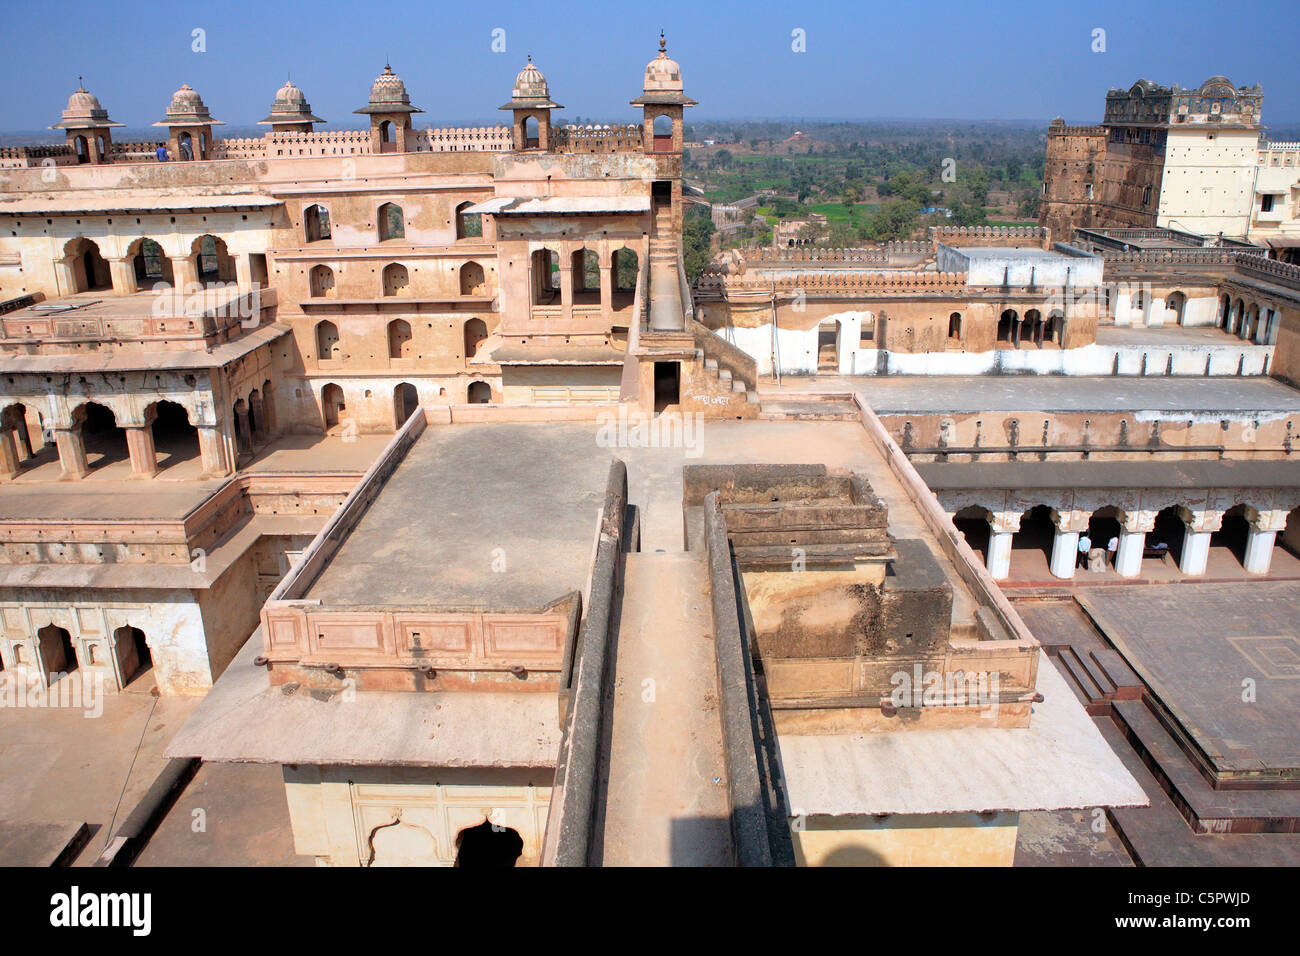 Ram Raja palace (finales del siglo XVI), Orchha, estado de Madhya Pradesh, India Foto de stock